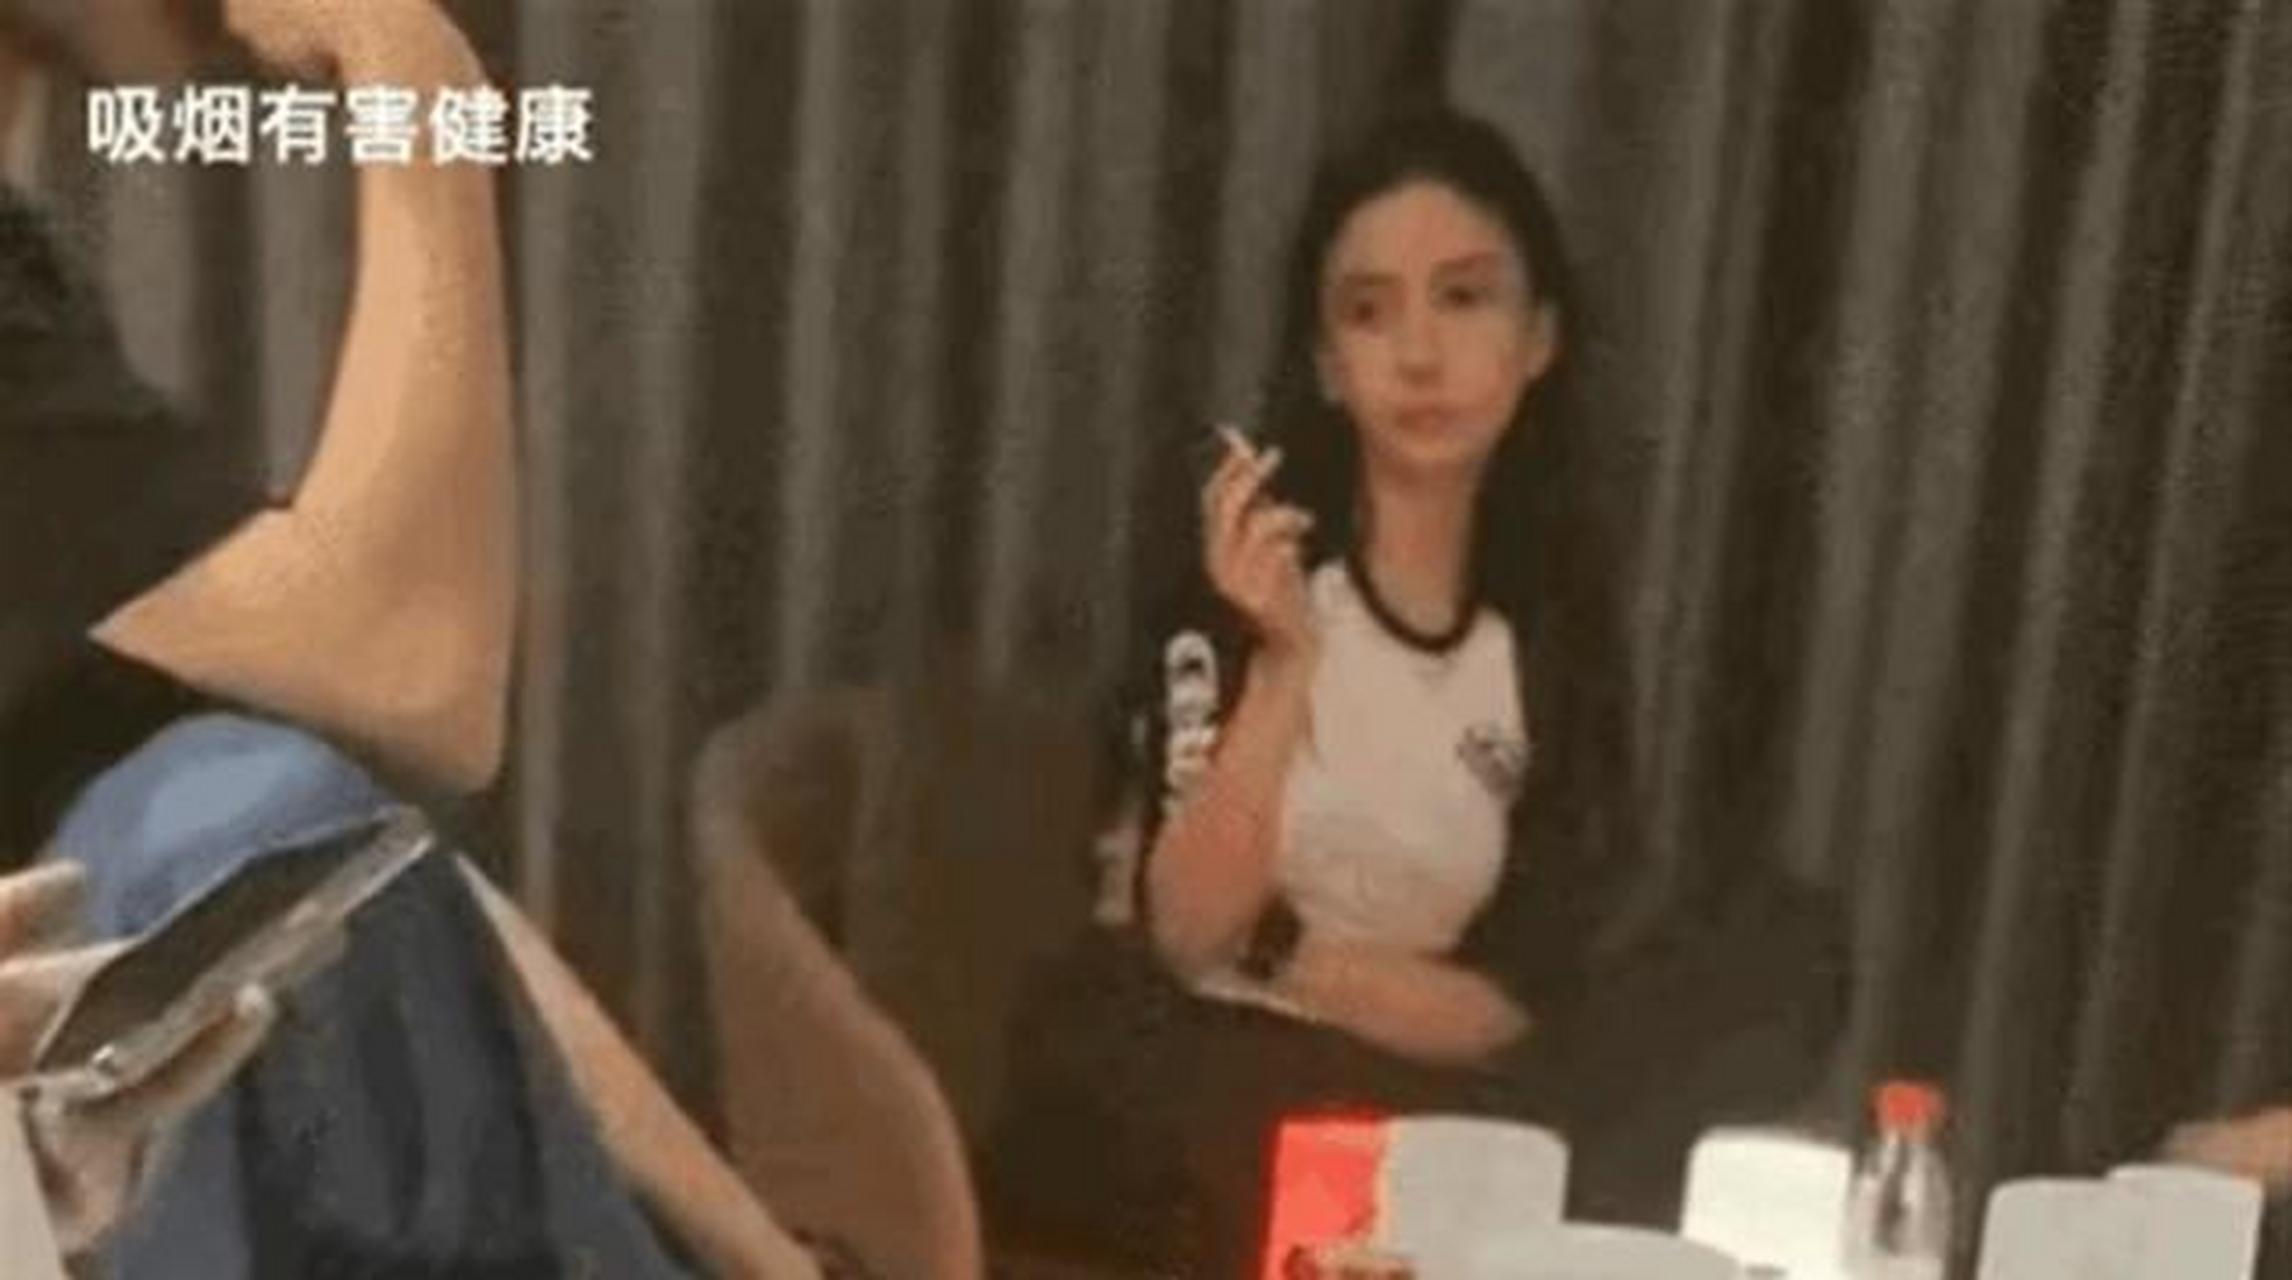 杨颖的吸烟视频被曝光明星真的没有隐私吗?